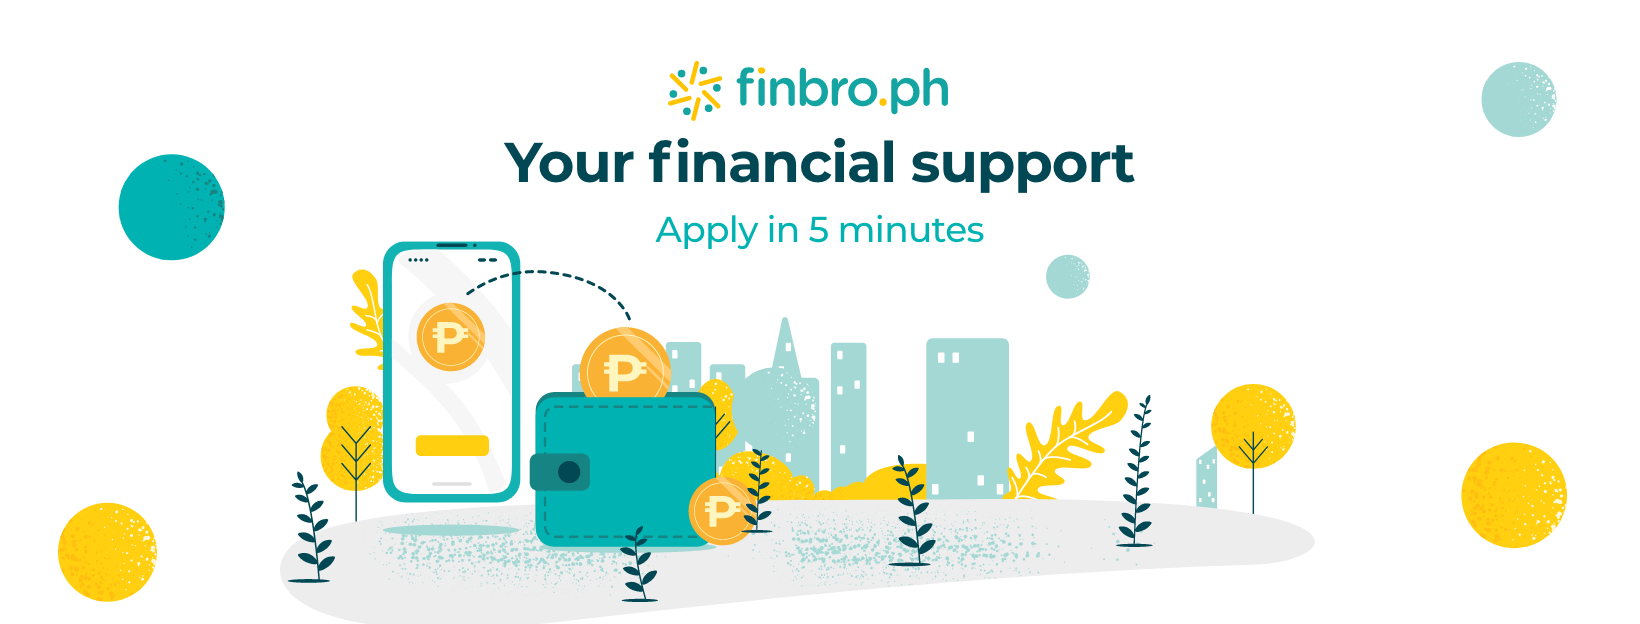 finbro loan review - easy application